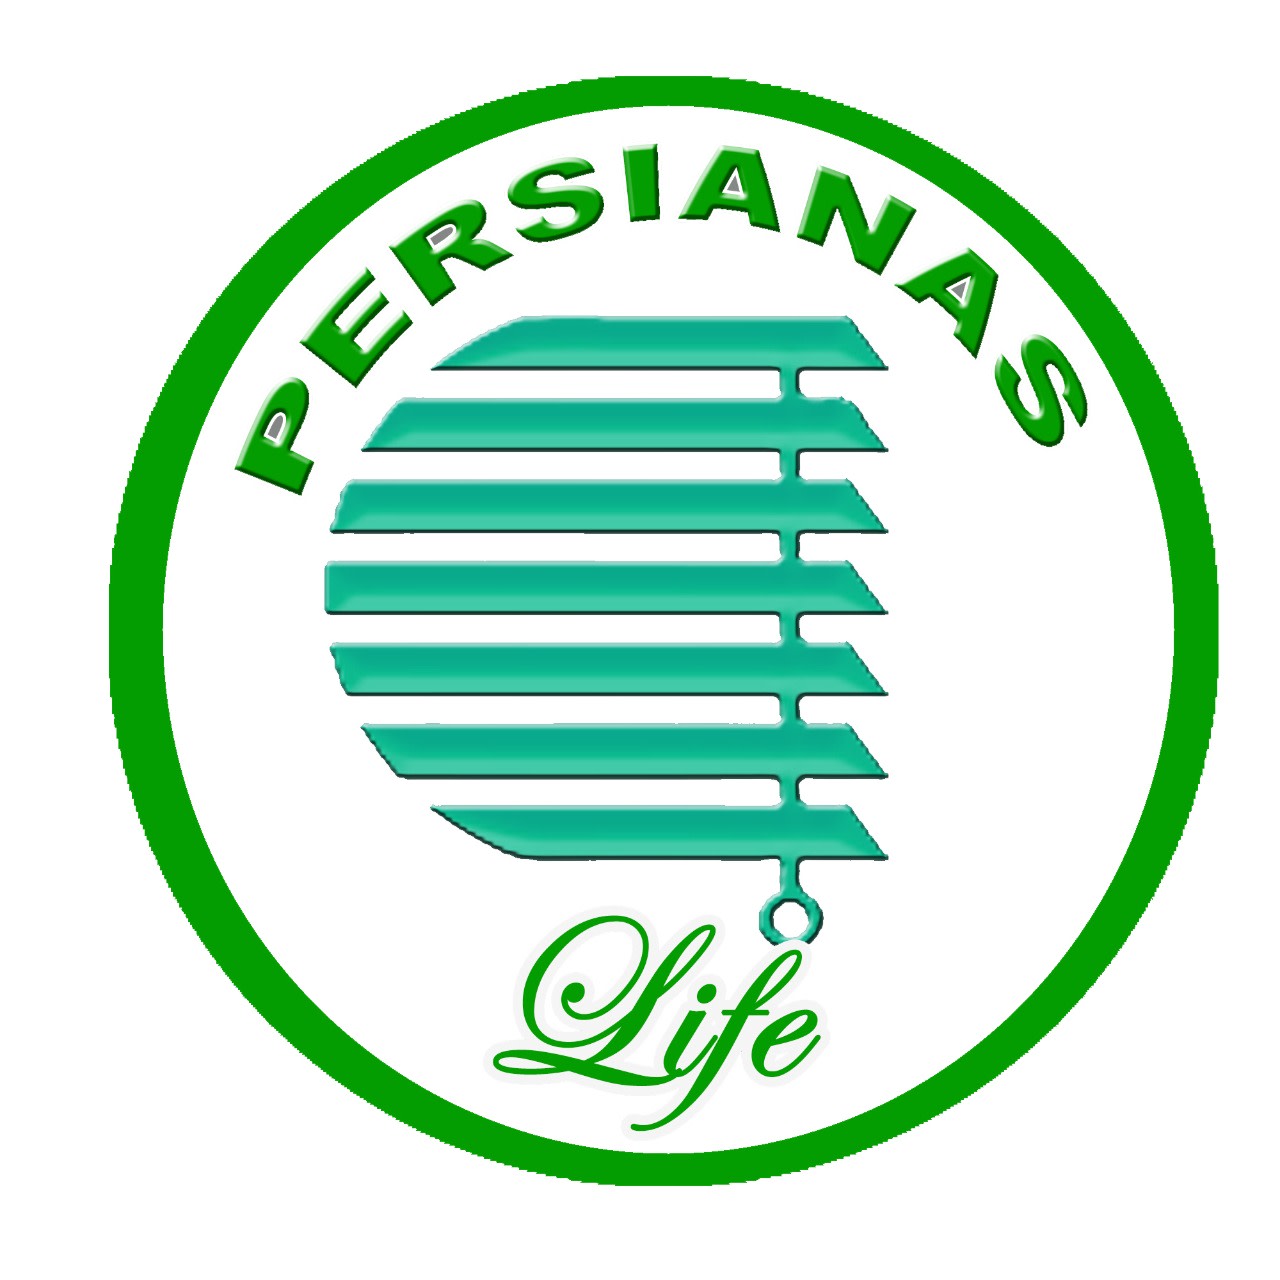 Persianas Life